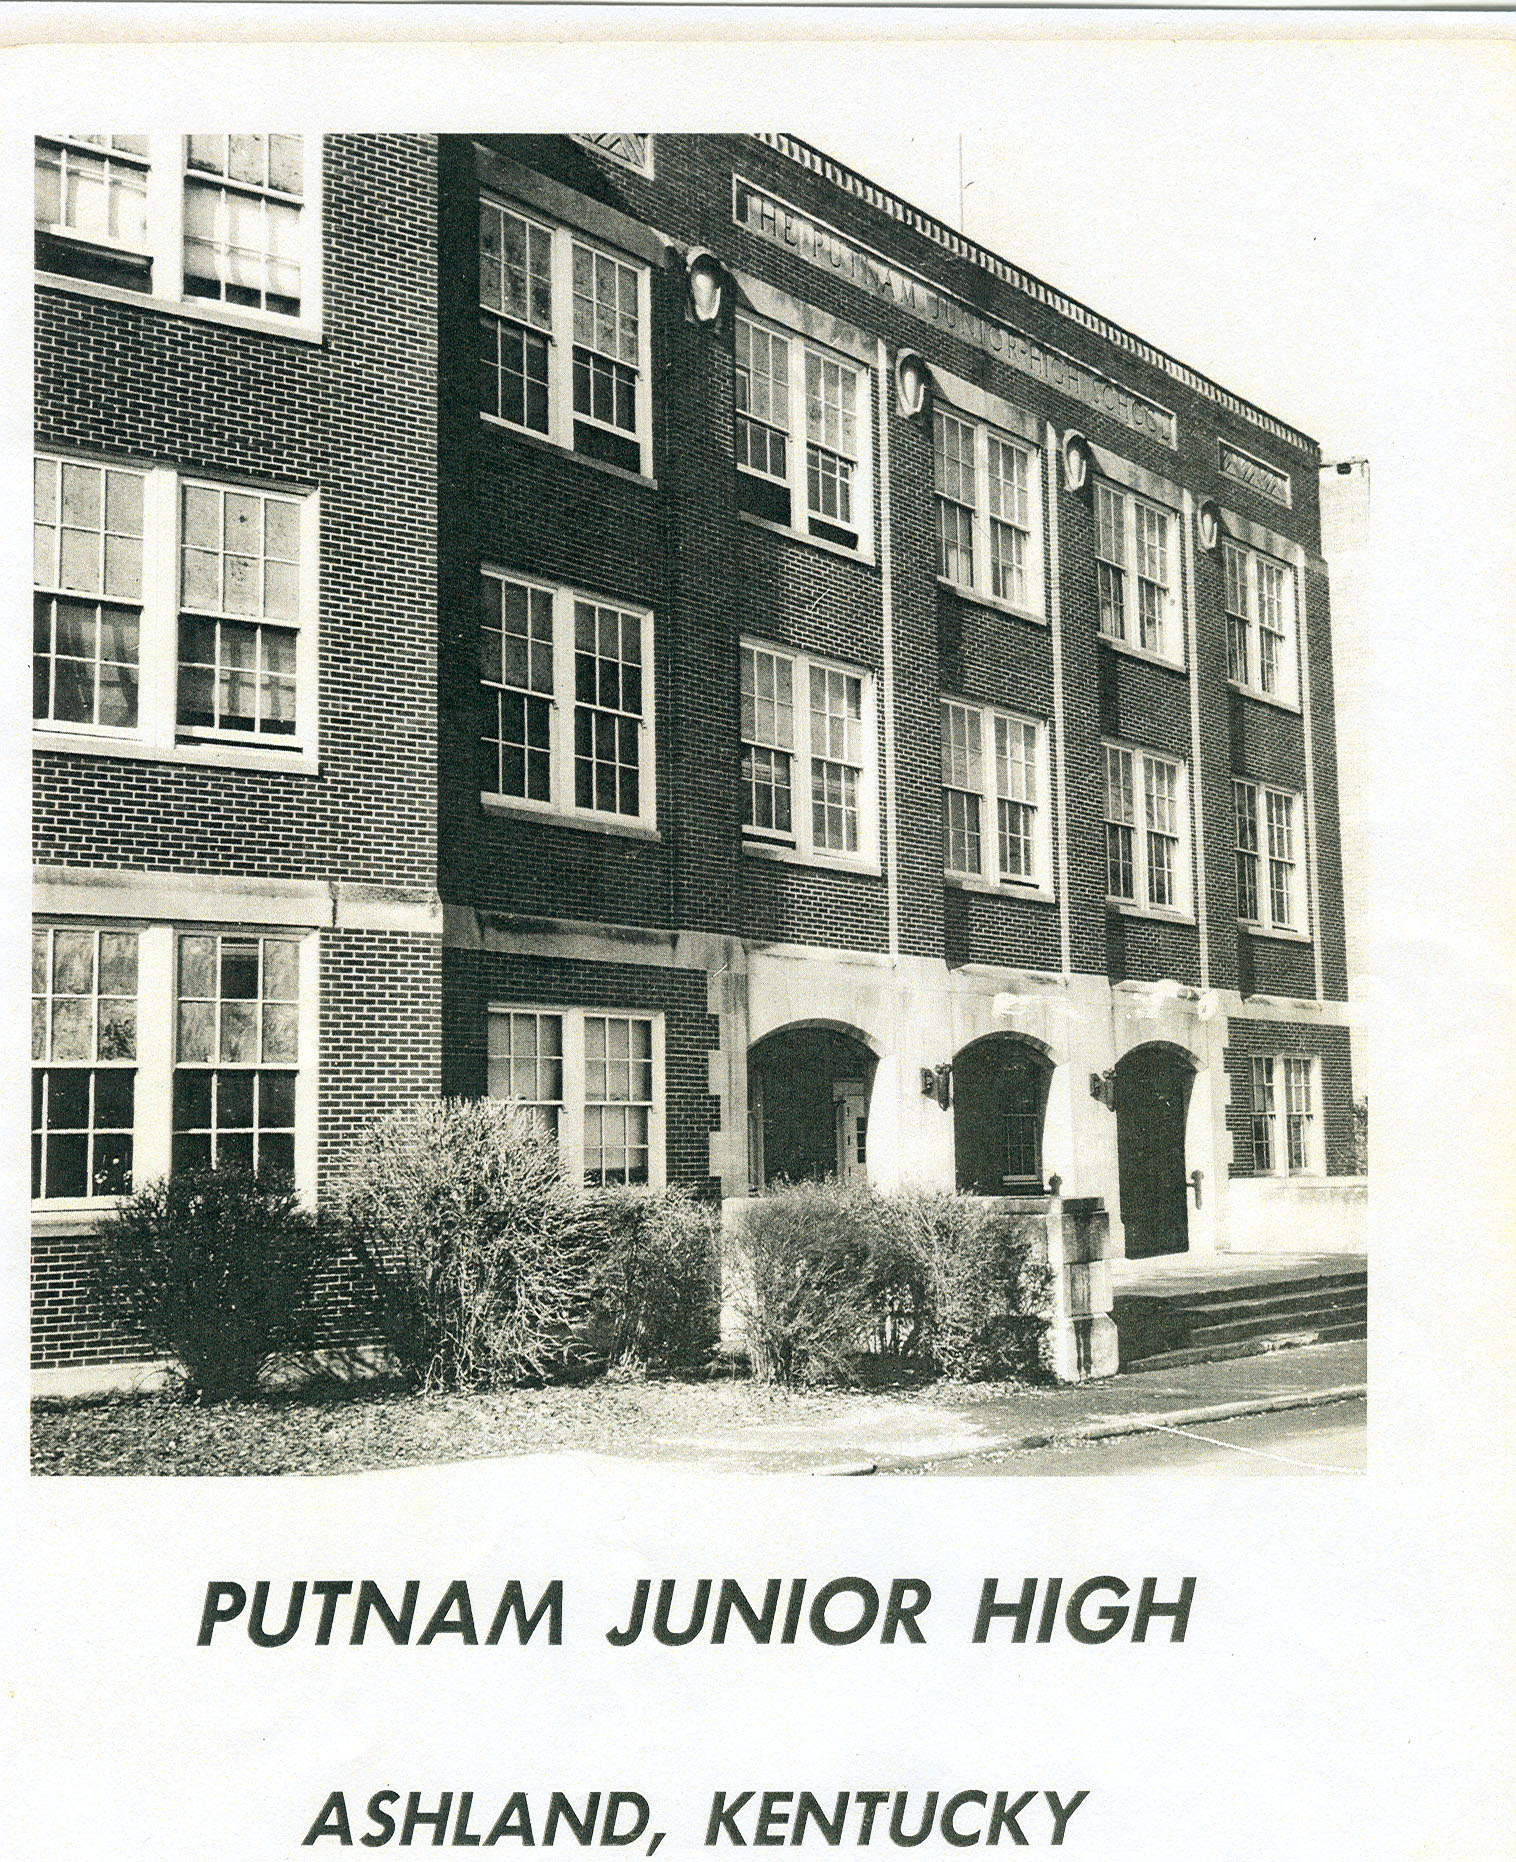 PUTNAM JUNIOR HIGH SCHOOL